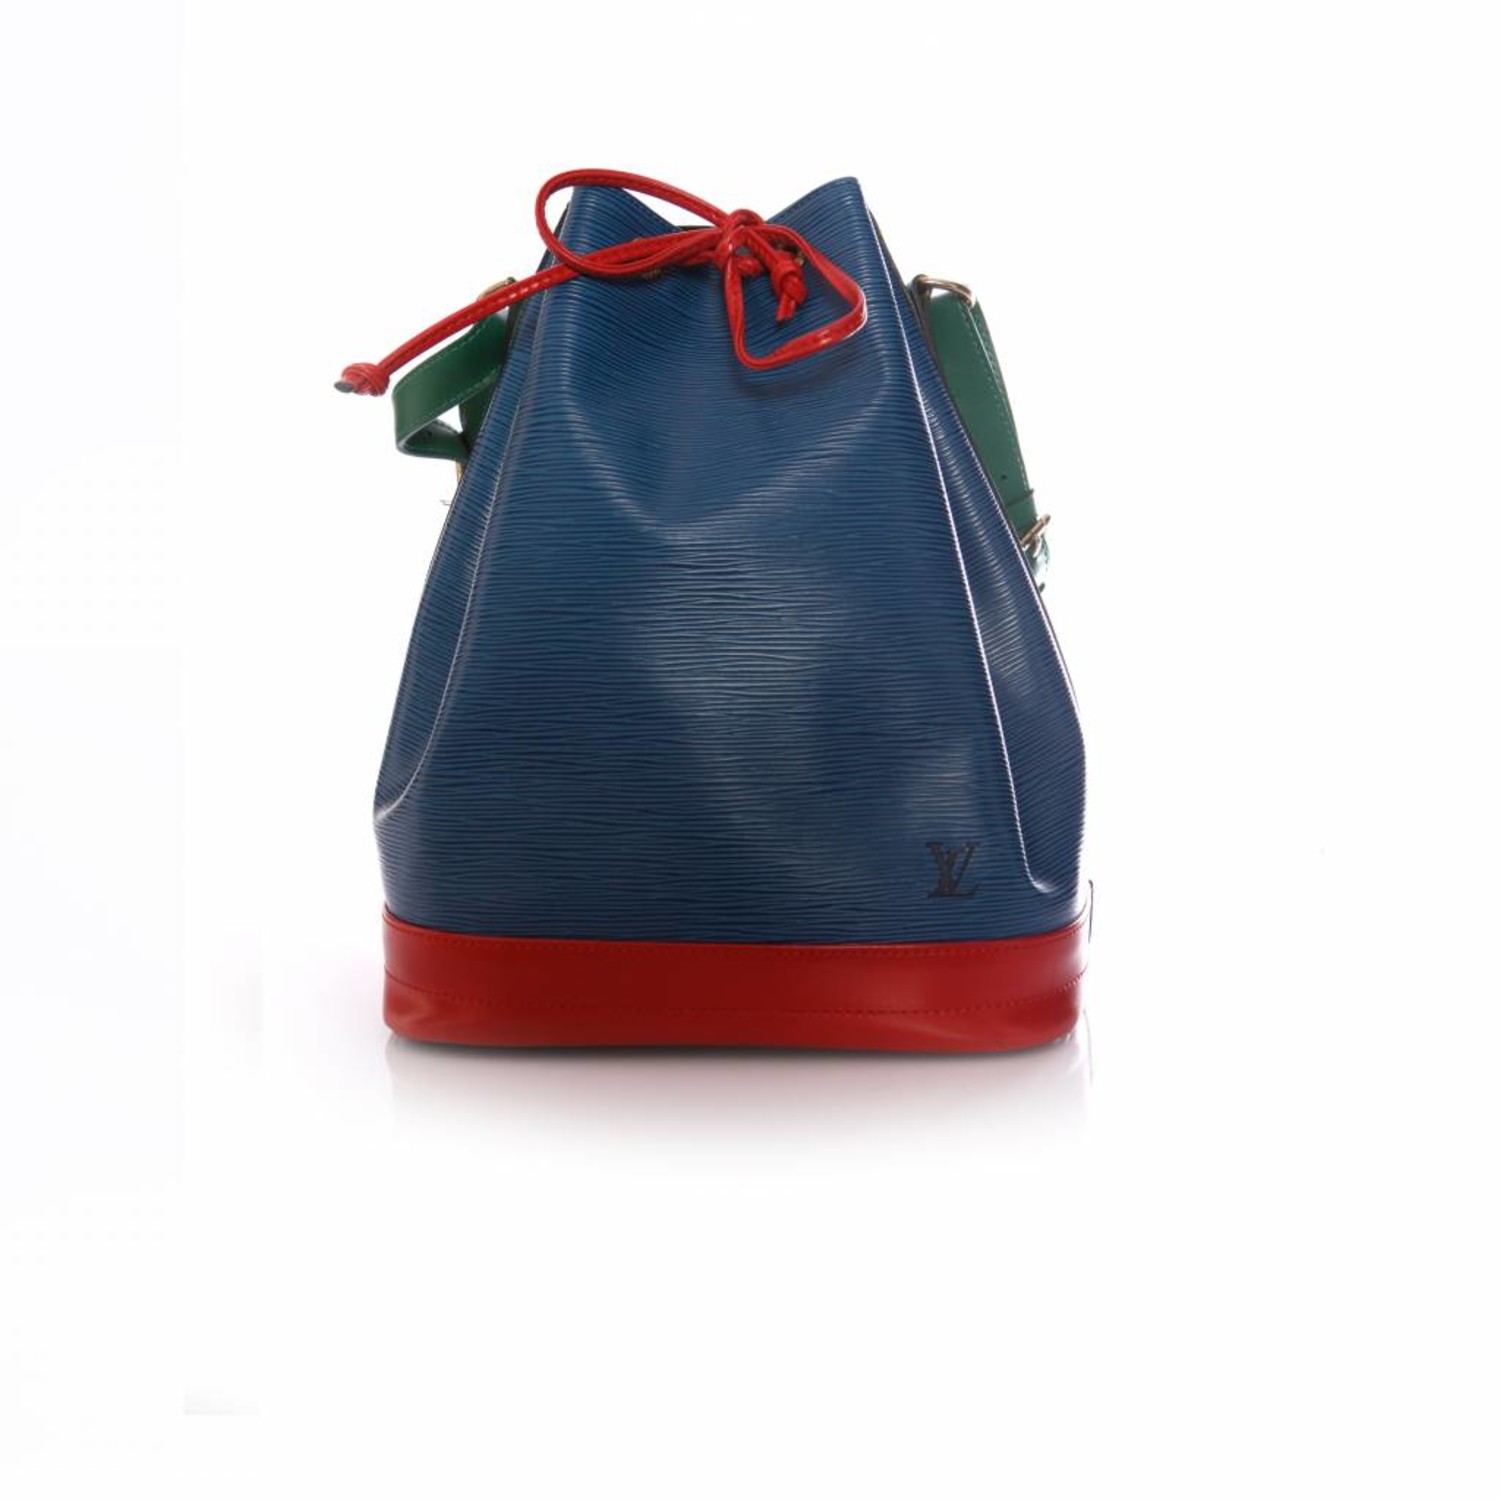 Louis Vuitton Vintage - Epi Tricolor Noe - Blue Multi - Epi Leather Bucket  Bag - Luxury High Quality - Avvenice